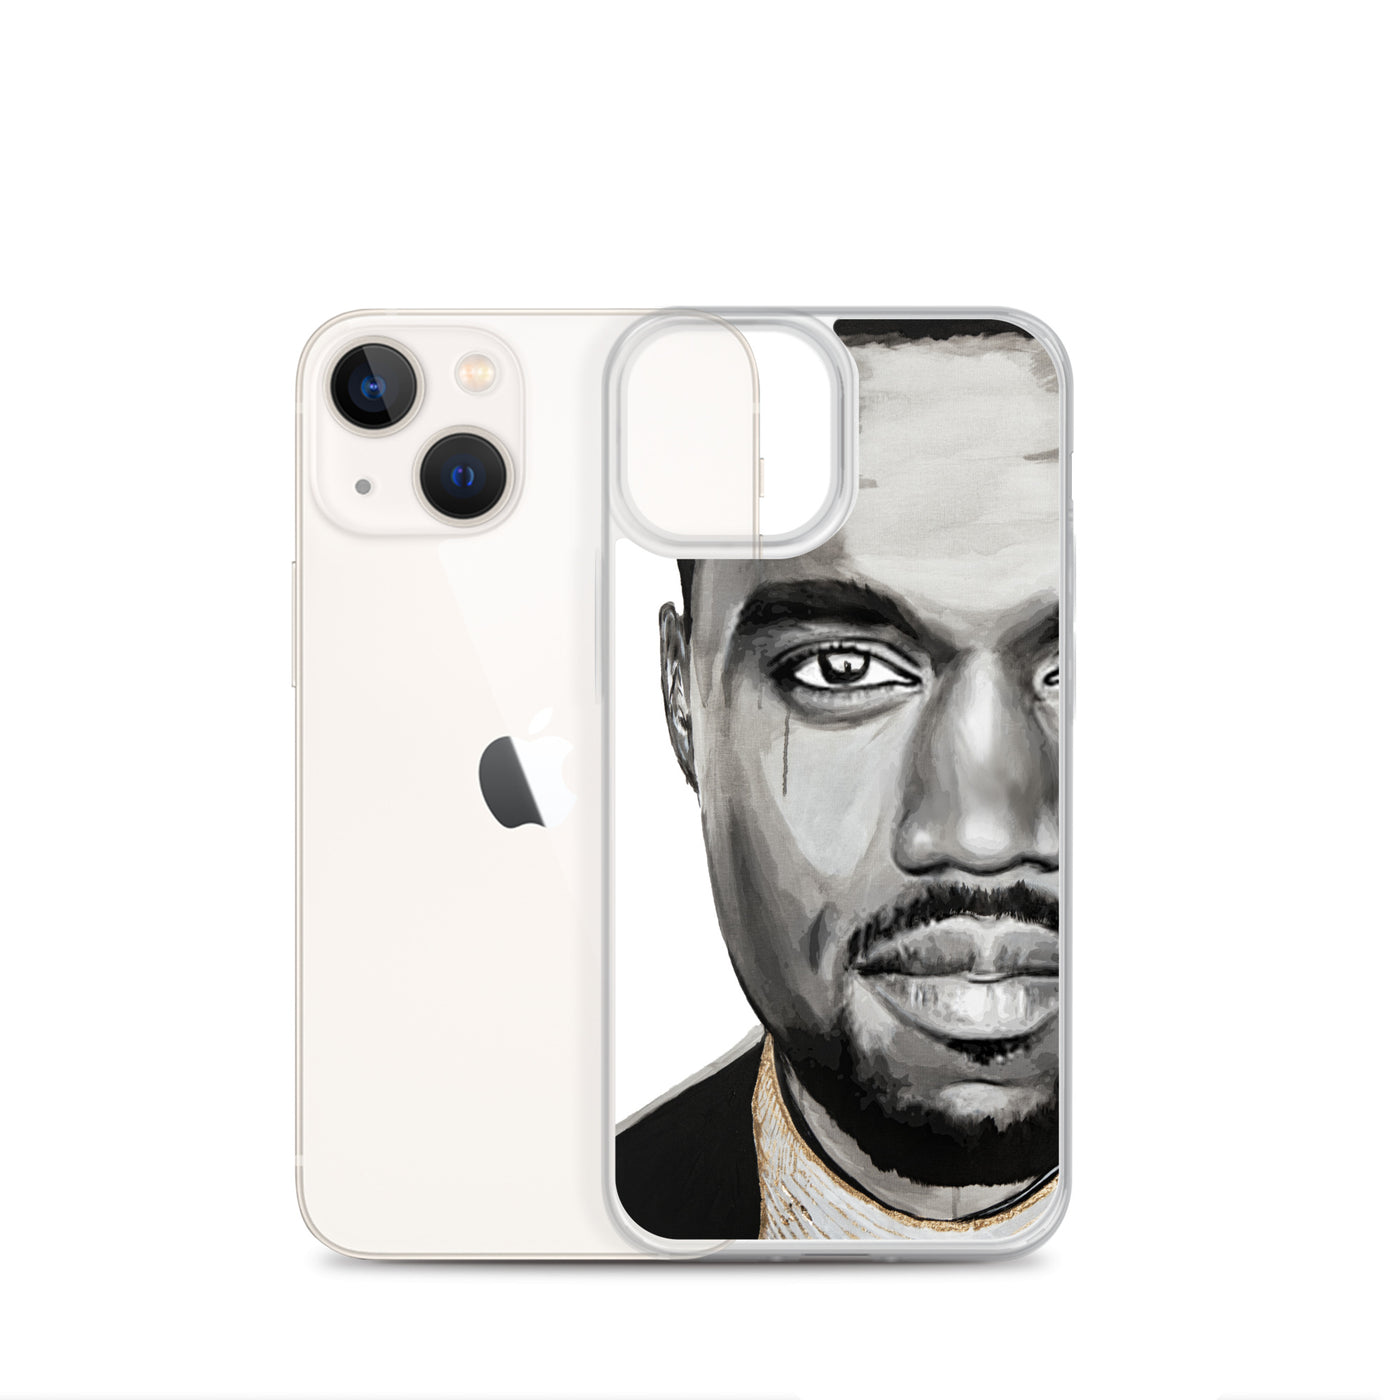 Kanye West style iPhone Case